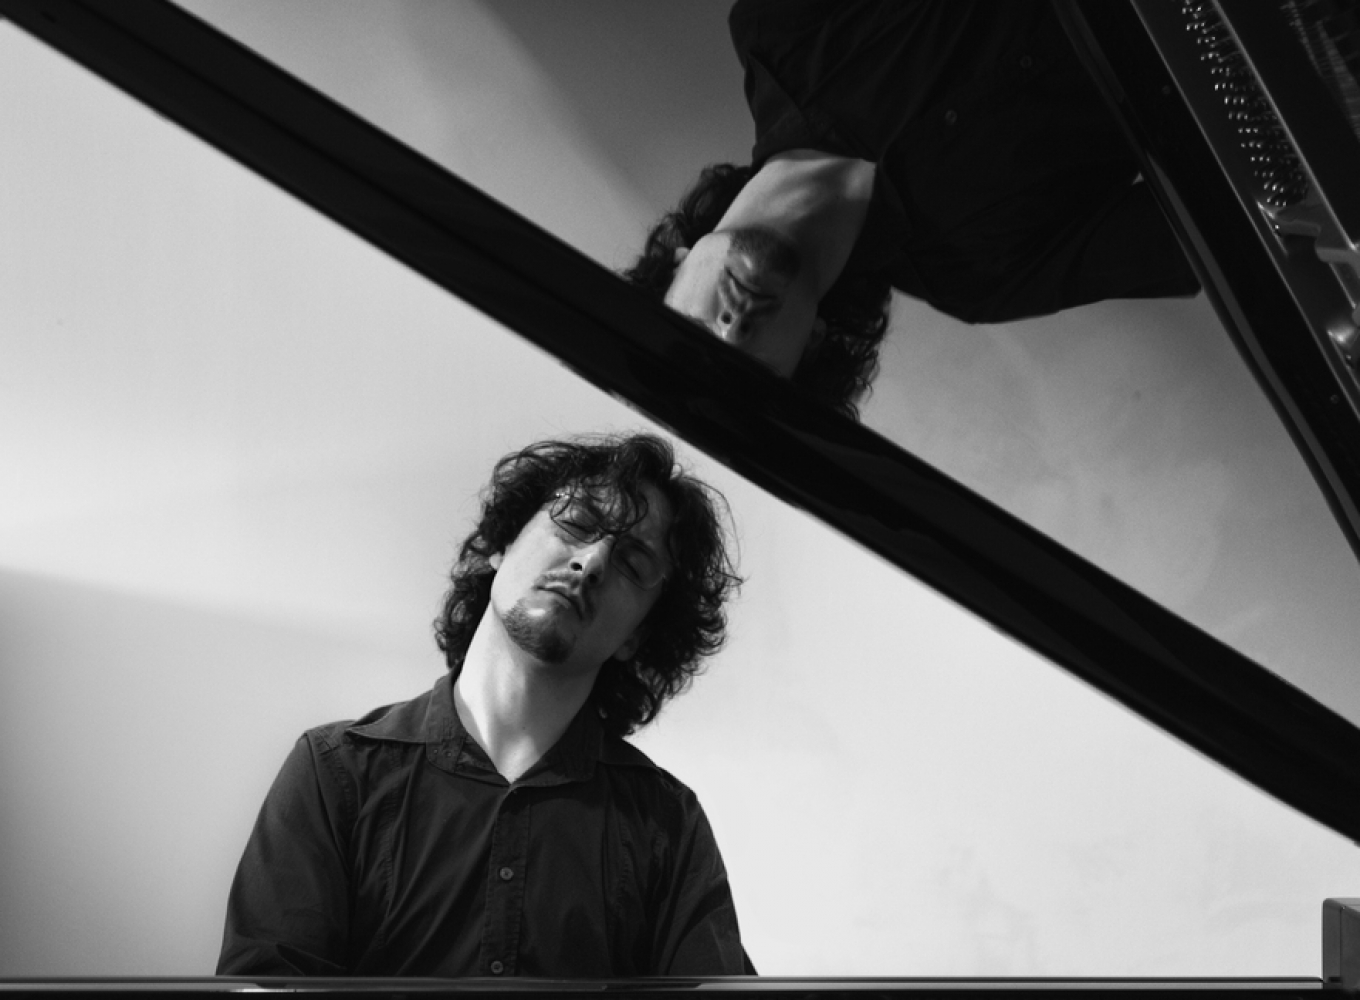 Manuel Magrini at the piano